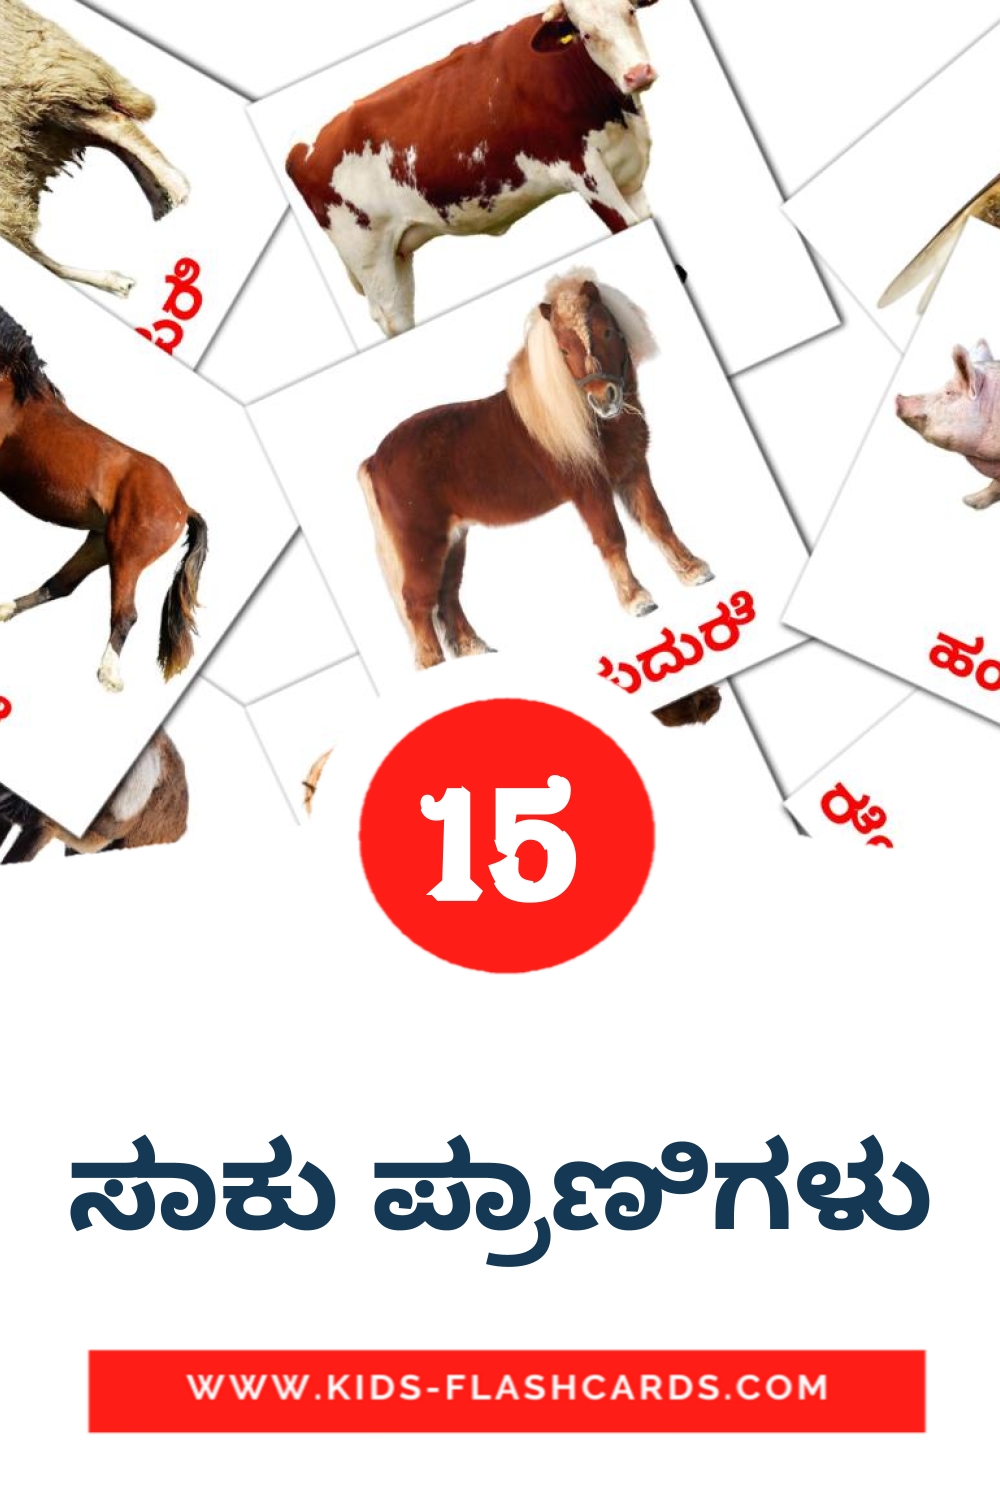 15 tarjetas didacticas de ಸಾಕು ಪ್ರಾಣಿಗಳು para el jardín de infancia en kannada